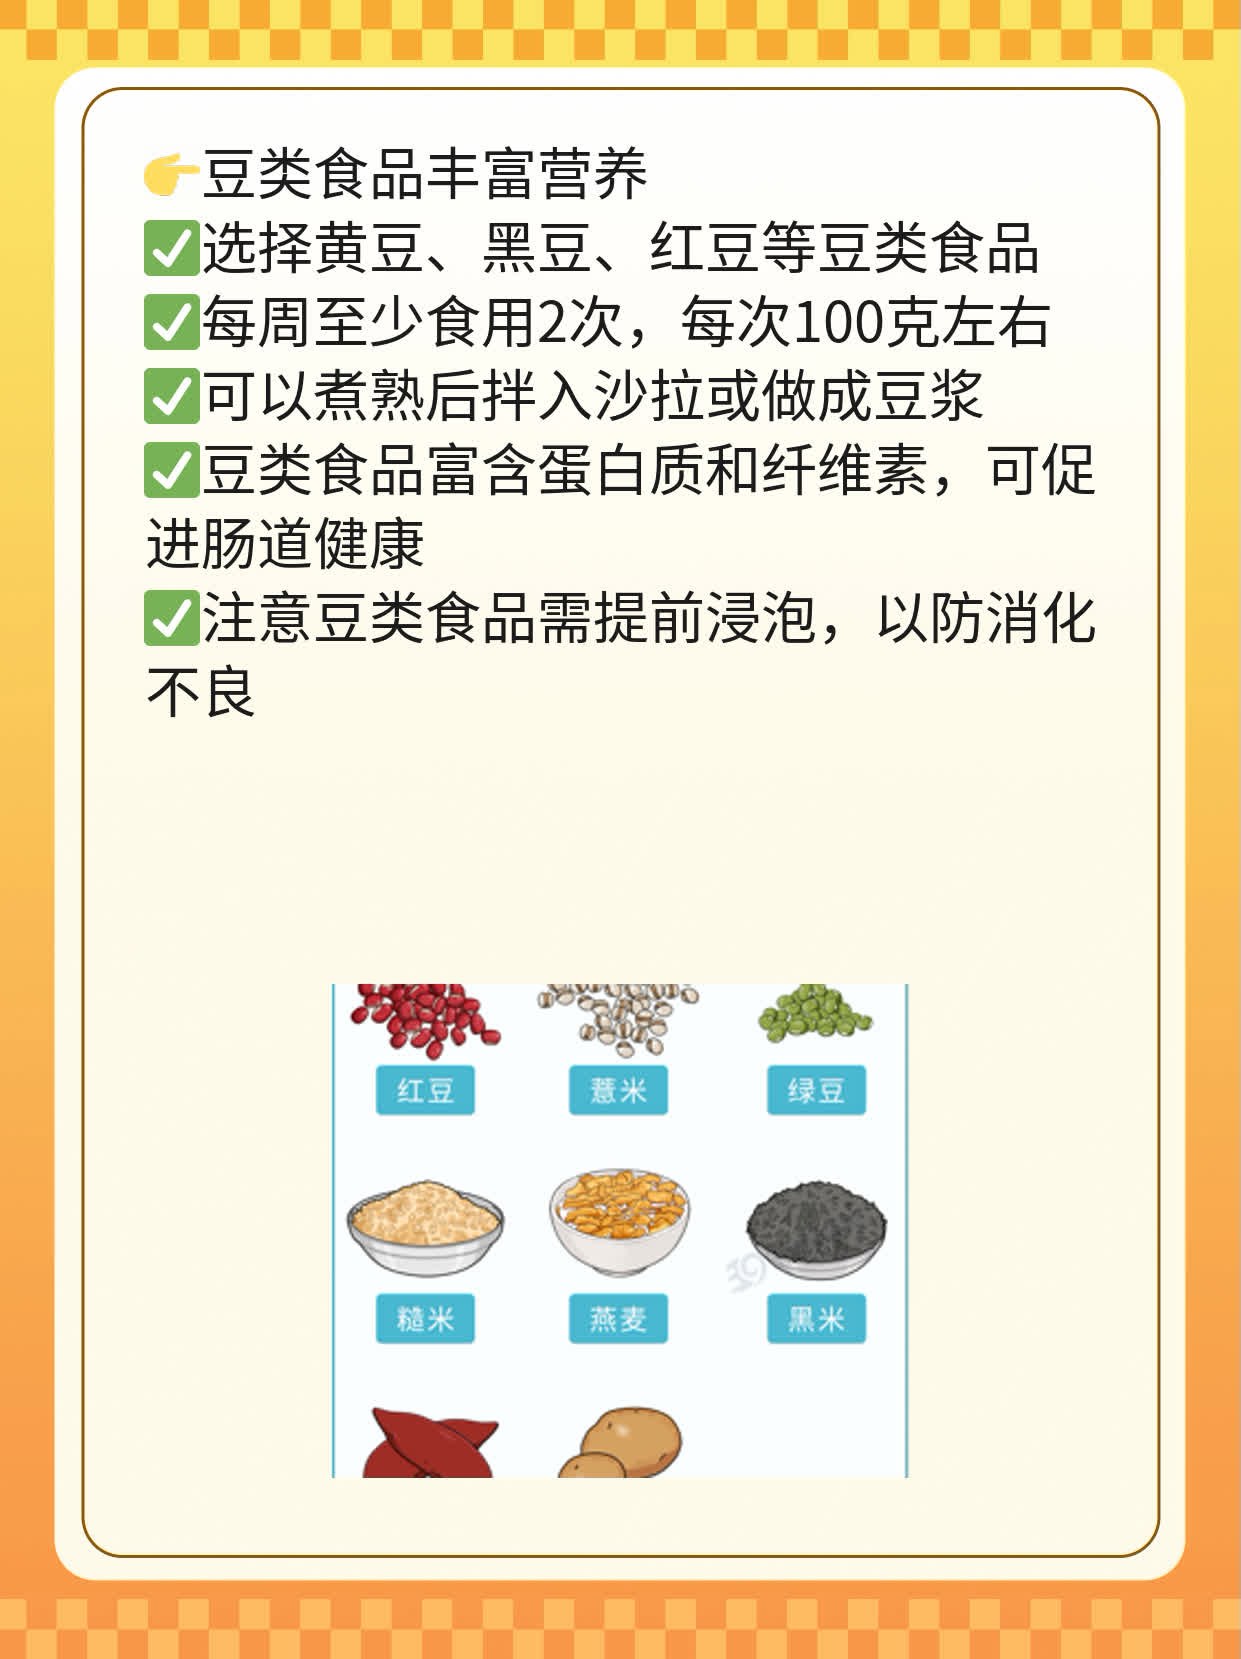 「补叶酸」：高含金量的食物指南